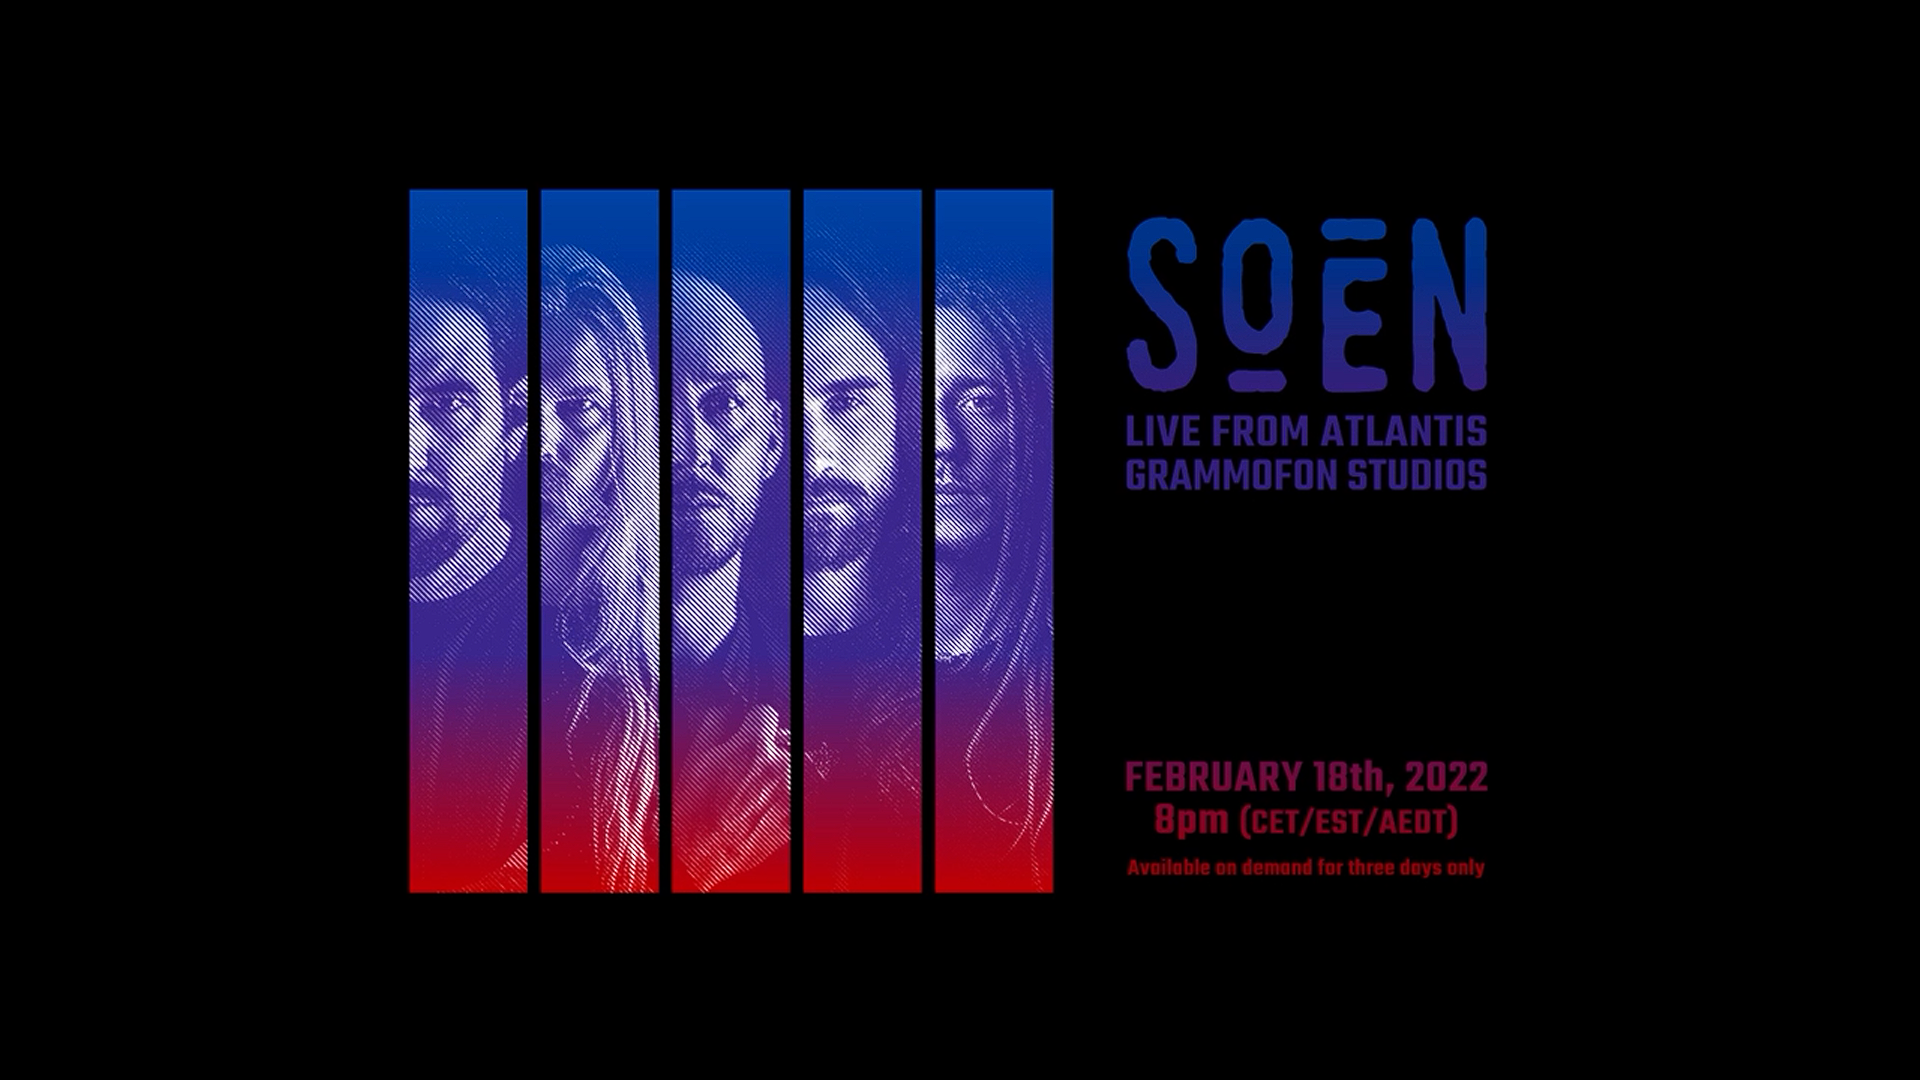 Soen - Live From Atlantis Grammofon Studios 18/02/2022